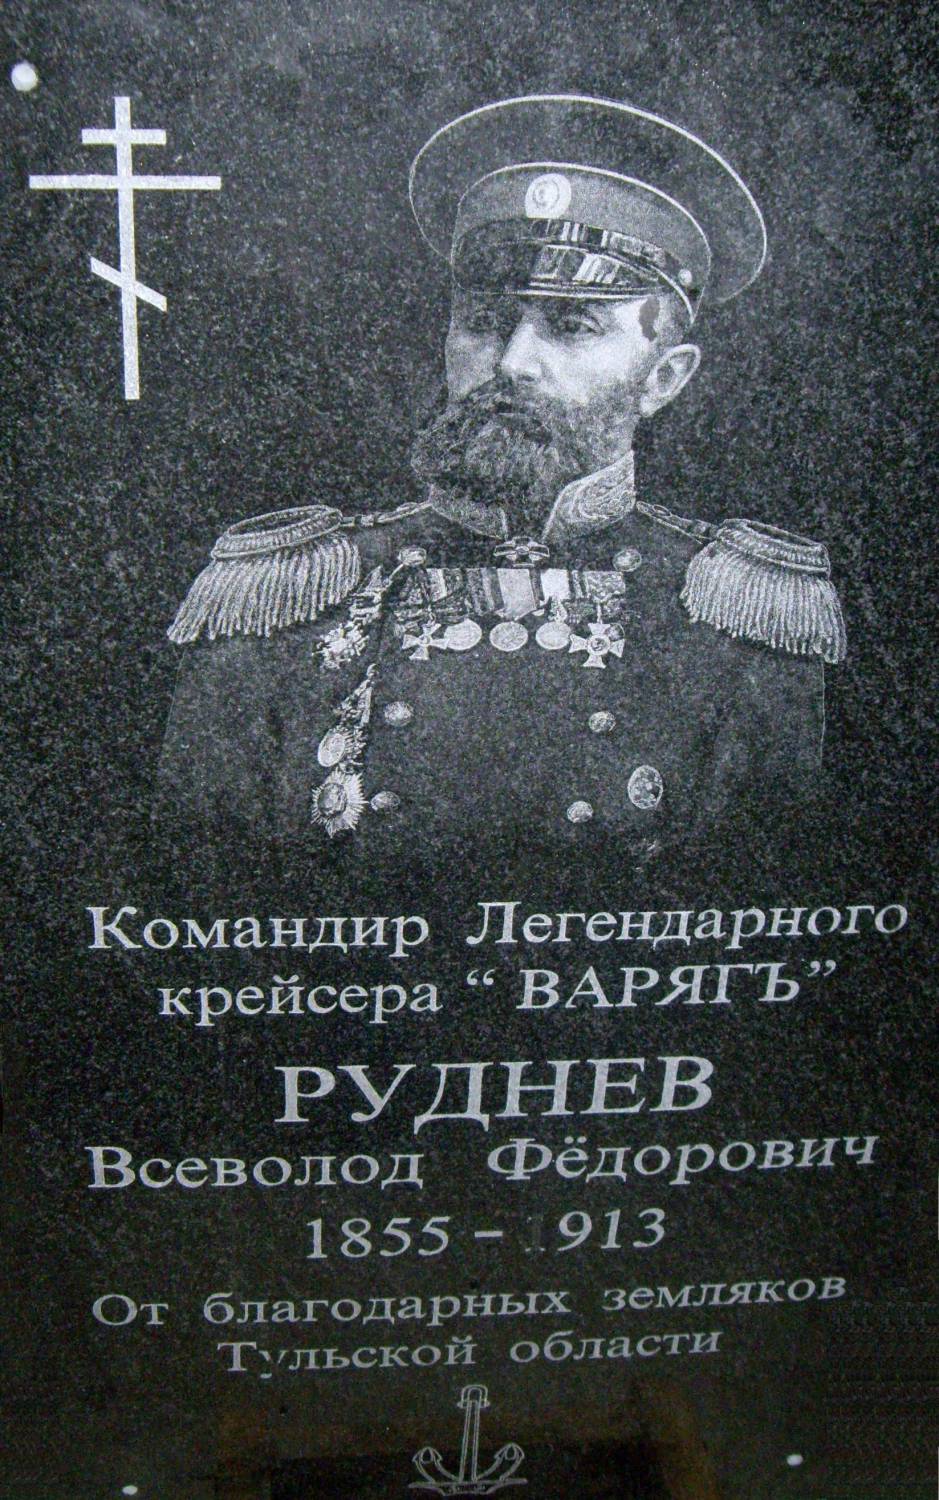 Мемориальная доска Всеволда Фёдоровича Руднева